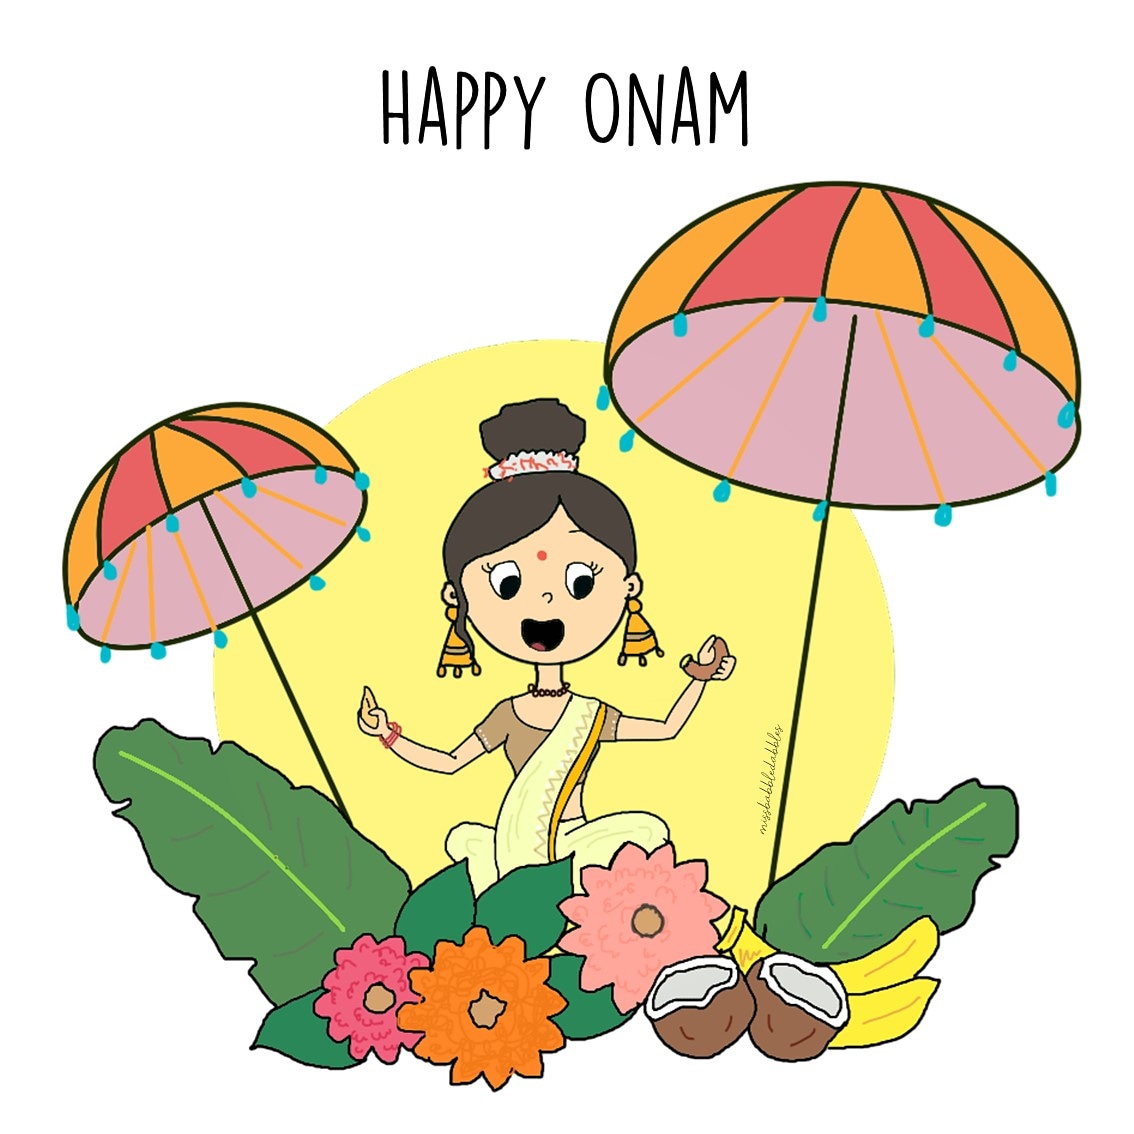 A little late, but Happy Onam ✨

#Onam2020 #Onam #Onamwishes